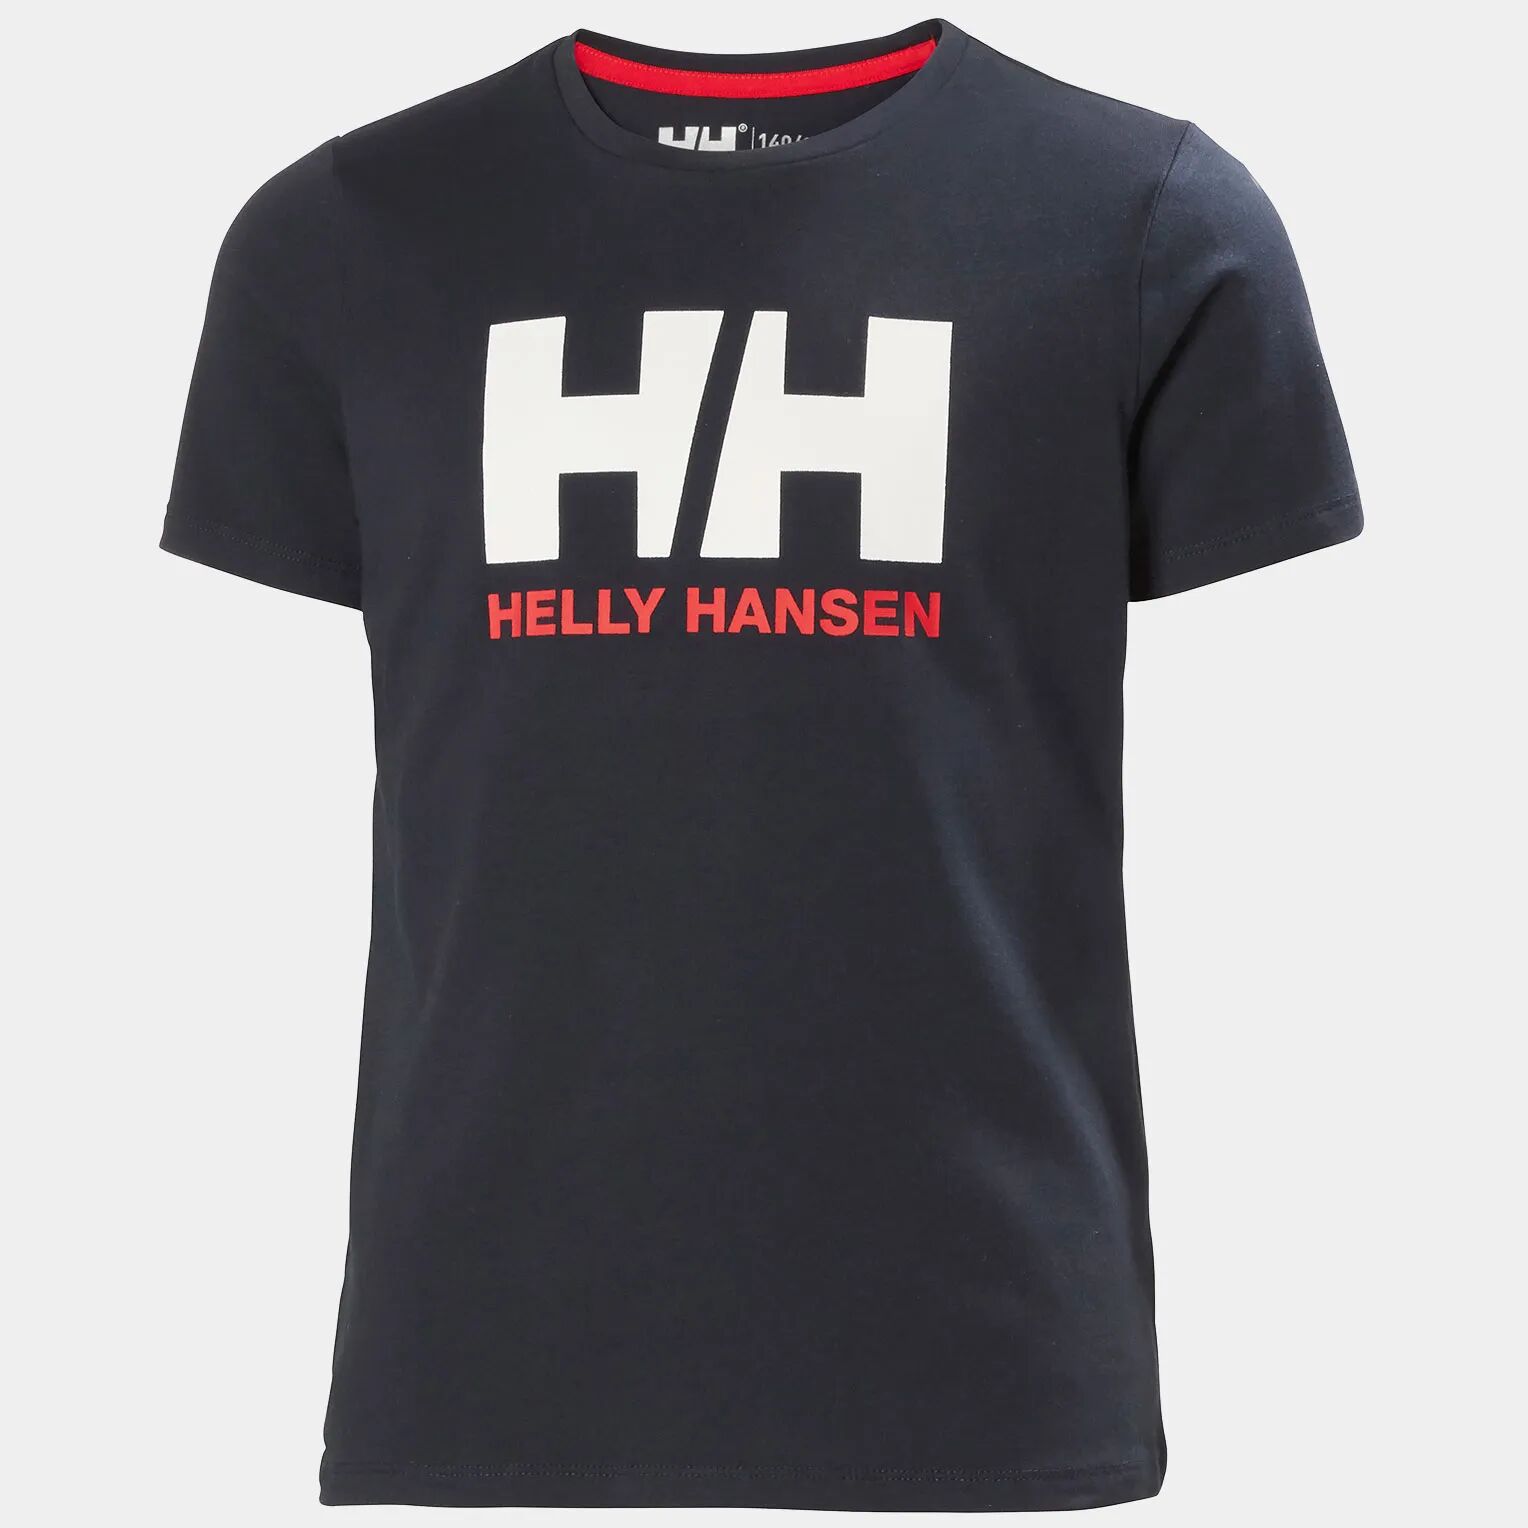 Helly Hansen Junior's HH Logo Round Neck Cotton Tshirt Navy 128/8 - Navy Blue - Unisex